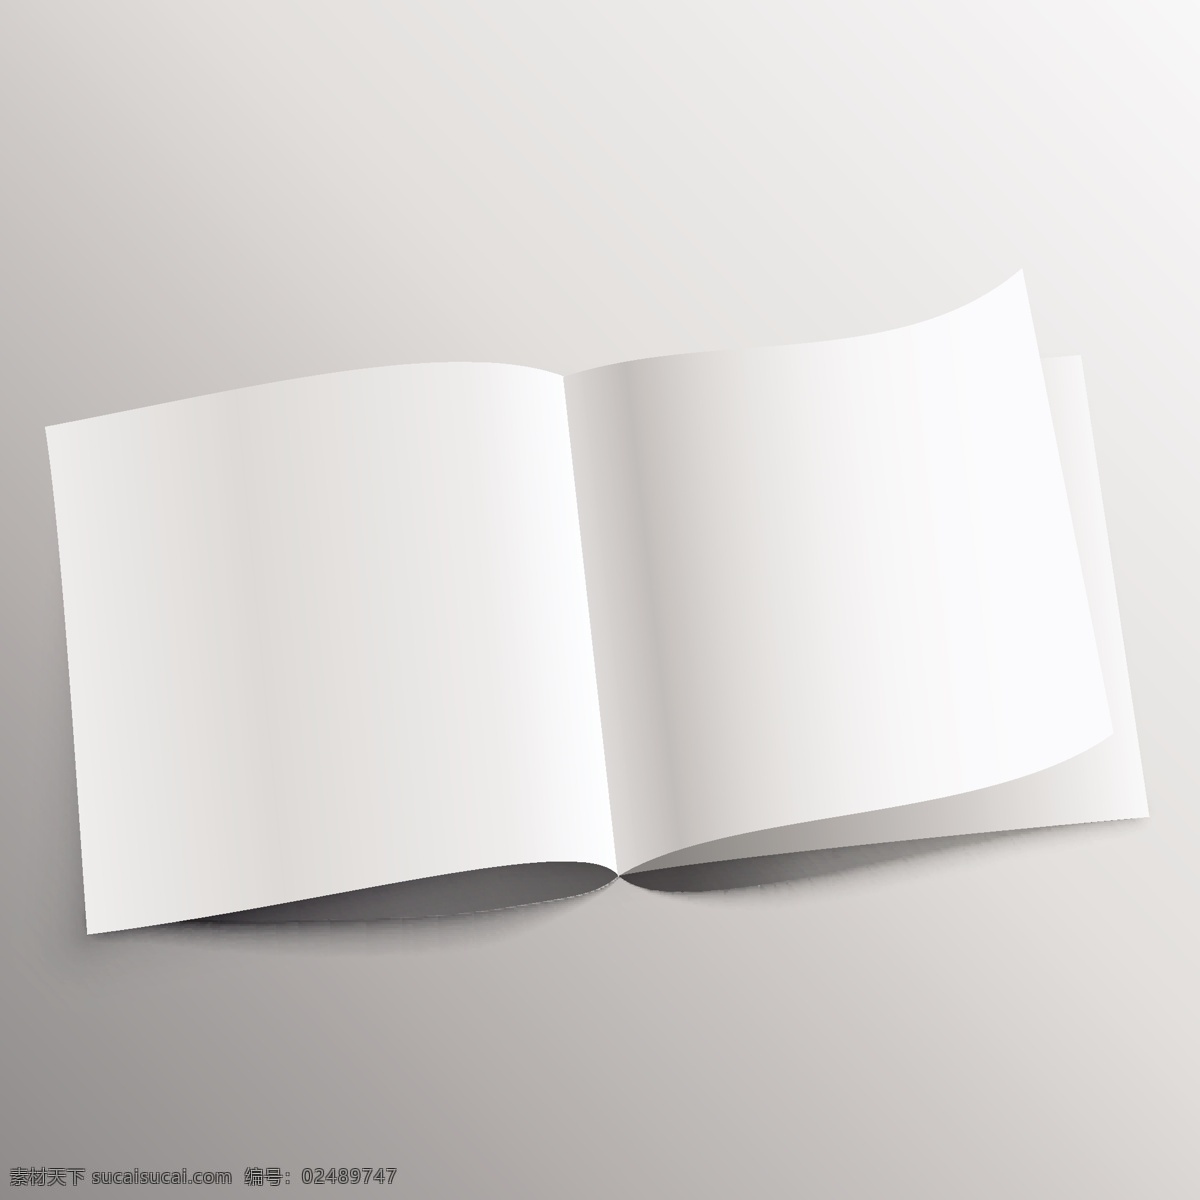 打开 书 模型 模板 小册子 纸 阴影显示 空白的 现实的 空的 嘲笑